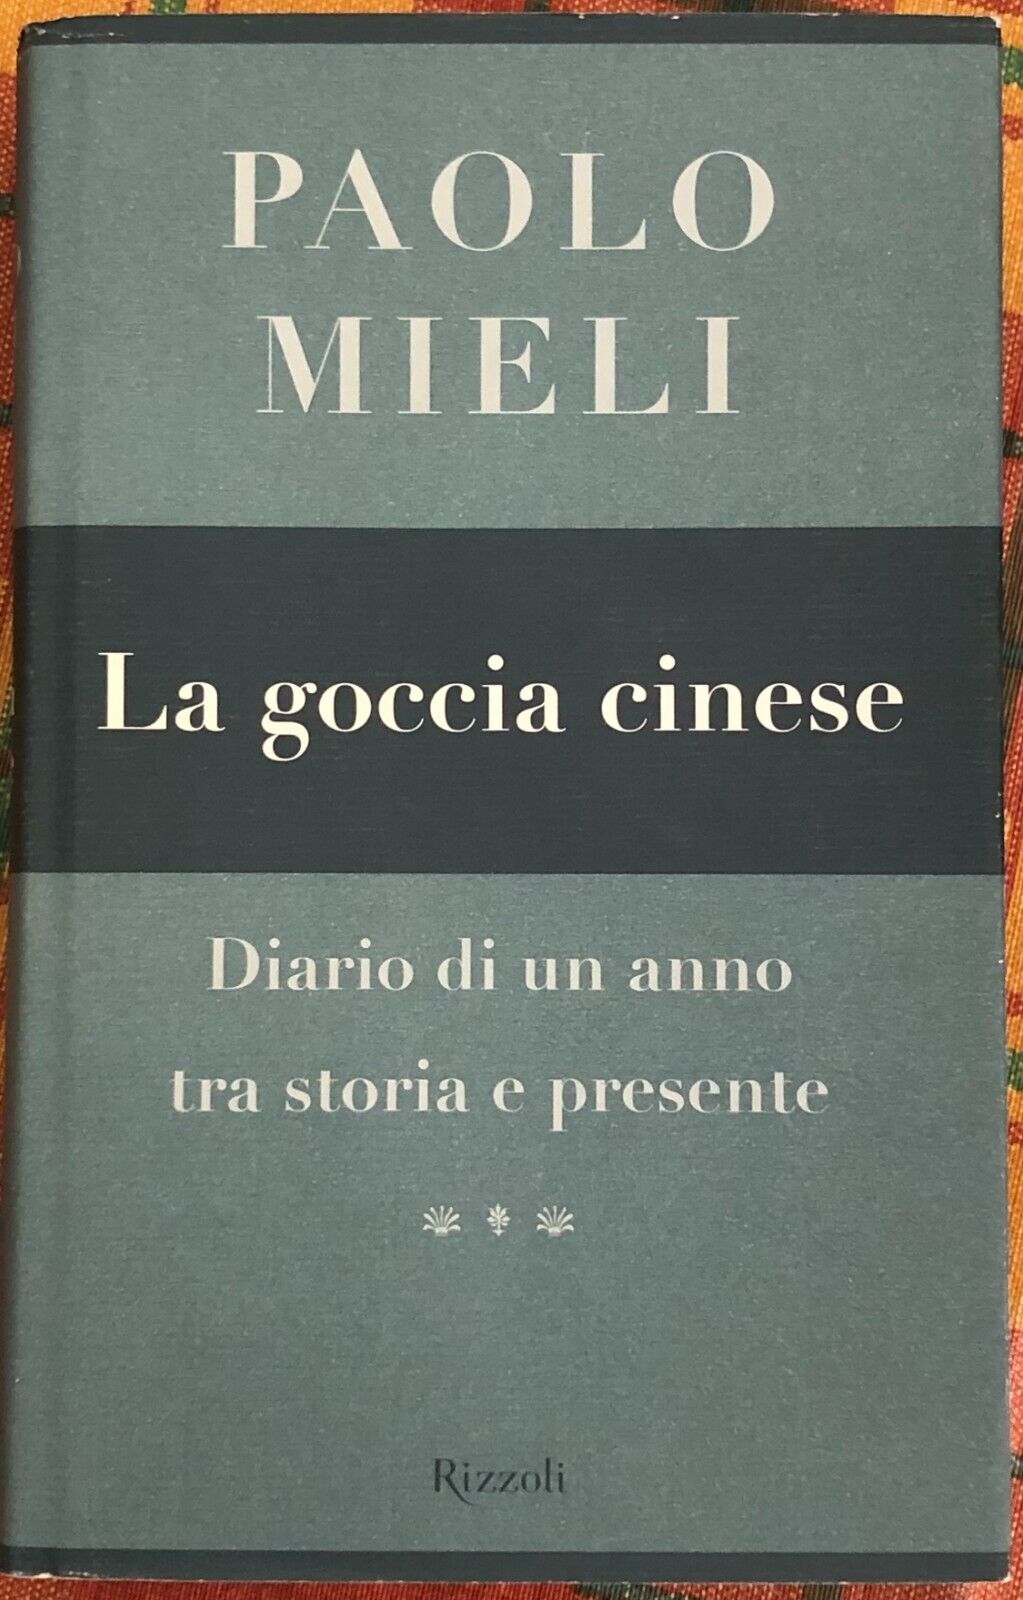 La goccia cinese diario di un anno tra storia e presente di Paolo Mieli, 2002,